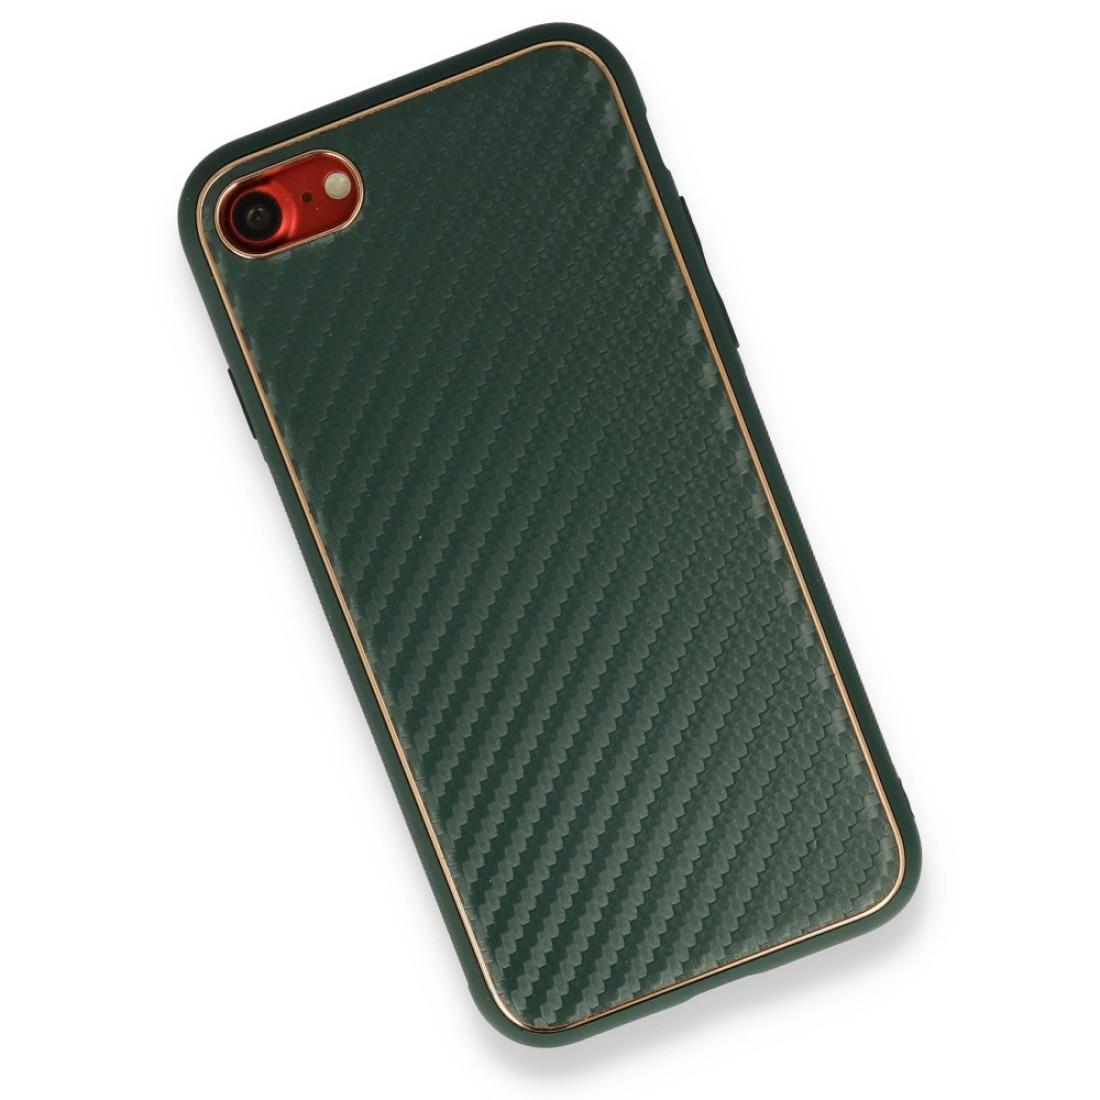 Apple iPhone SE 2020 Kılıf Coco Karbon Silikon - Yeşil